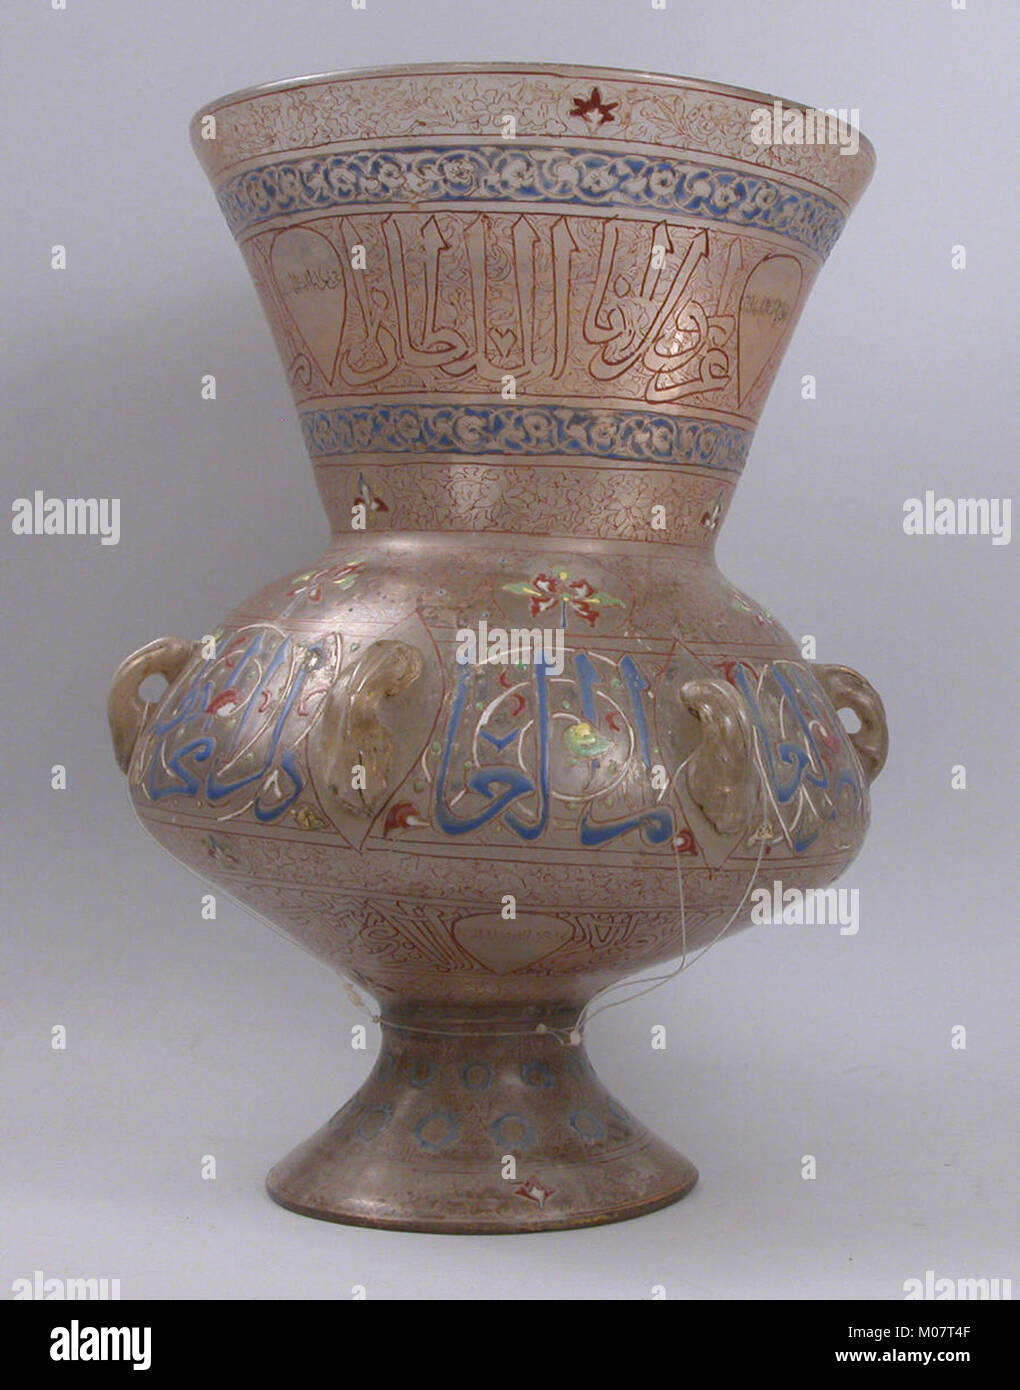 Mosque Lamp Bearing the Name of the Mamluk Sultan al-Malik al-Nasir MET sf17-190-987b Stock Photo